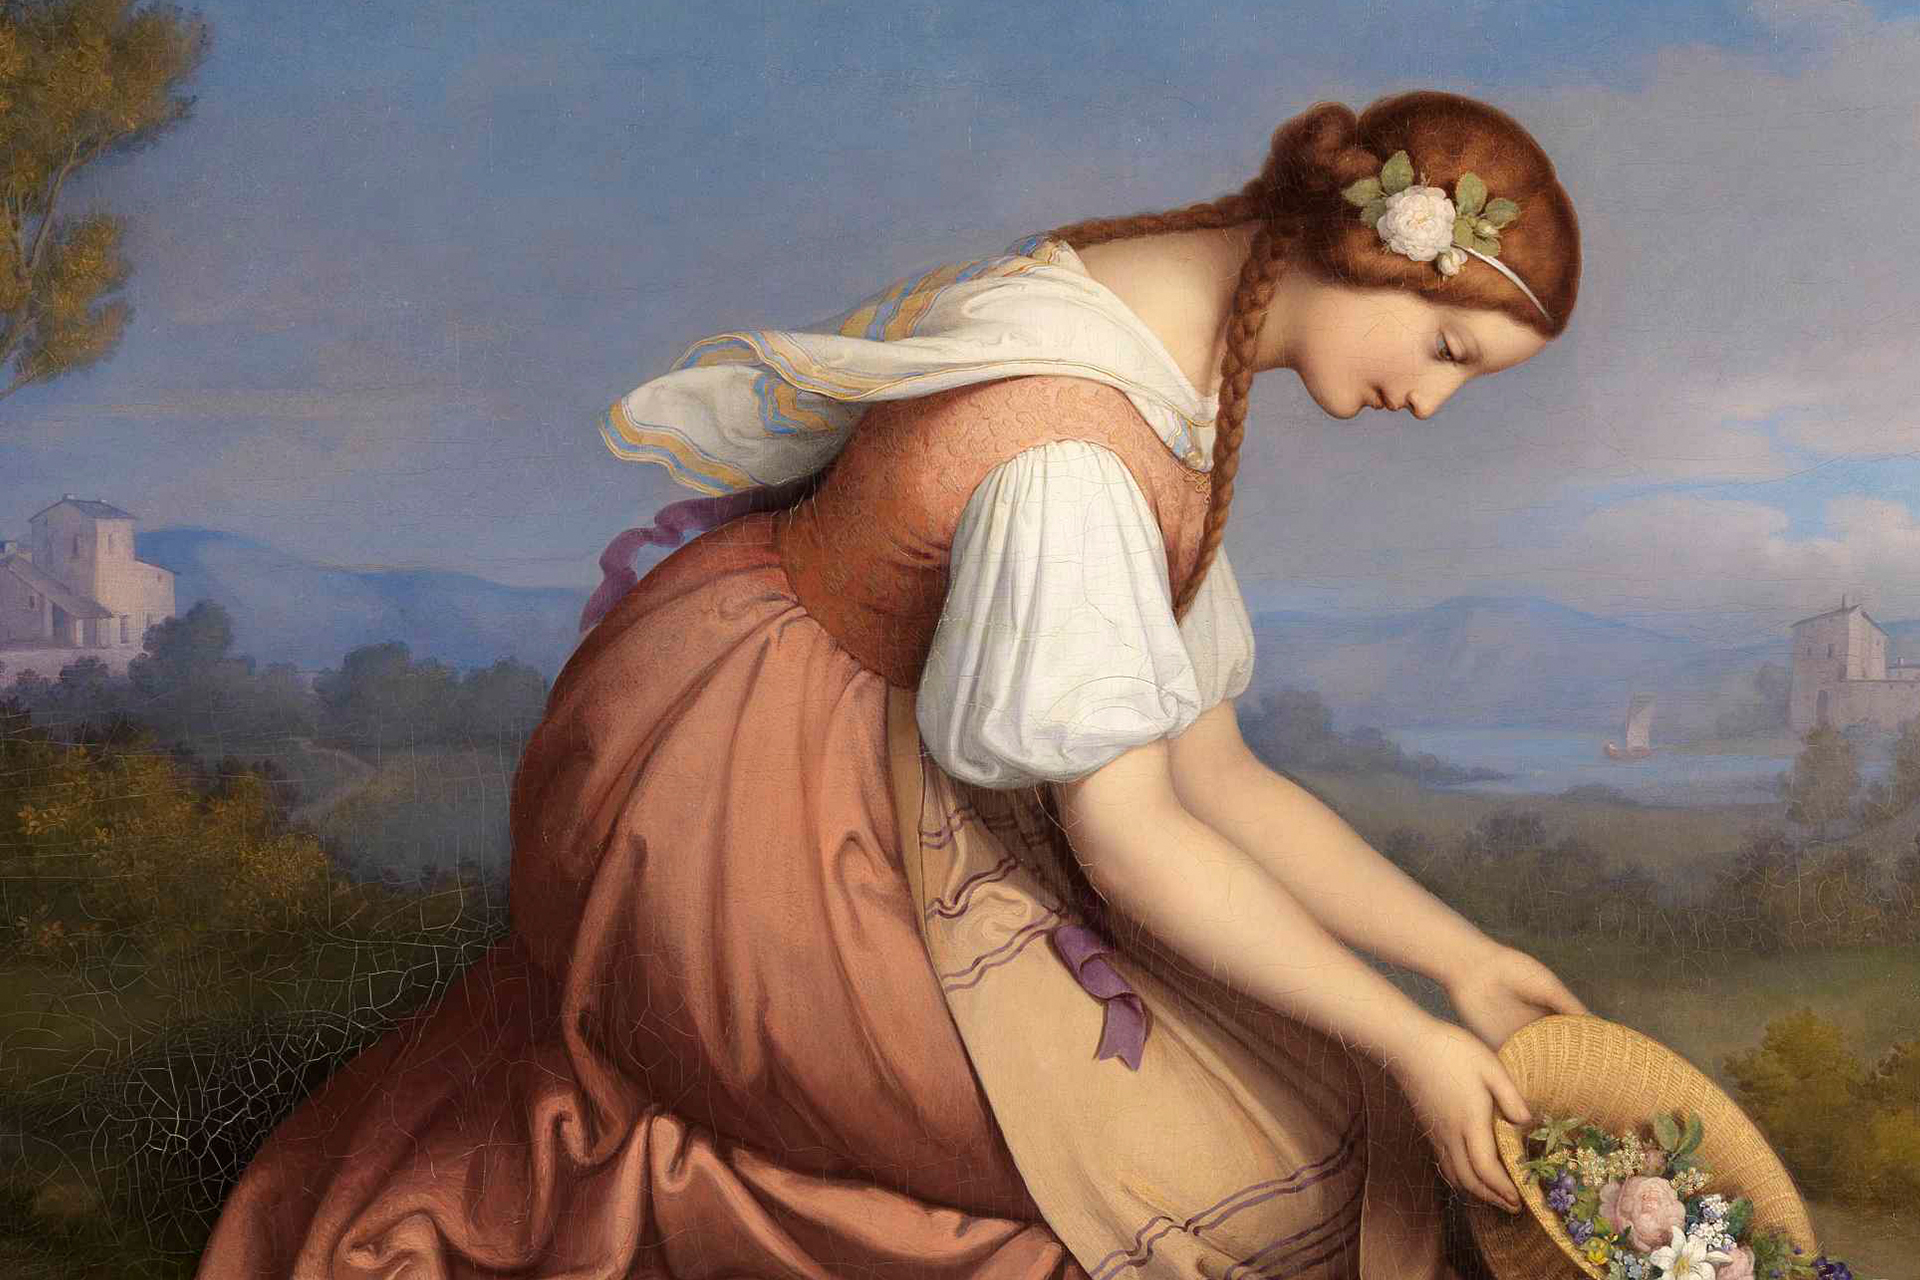 Abbildung eines Gemäldes von einem knienden Mädchen, das gerade einen Blumenkorb ausschüttet.